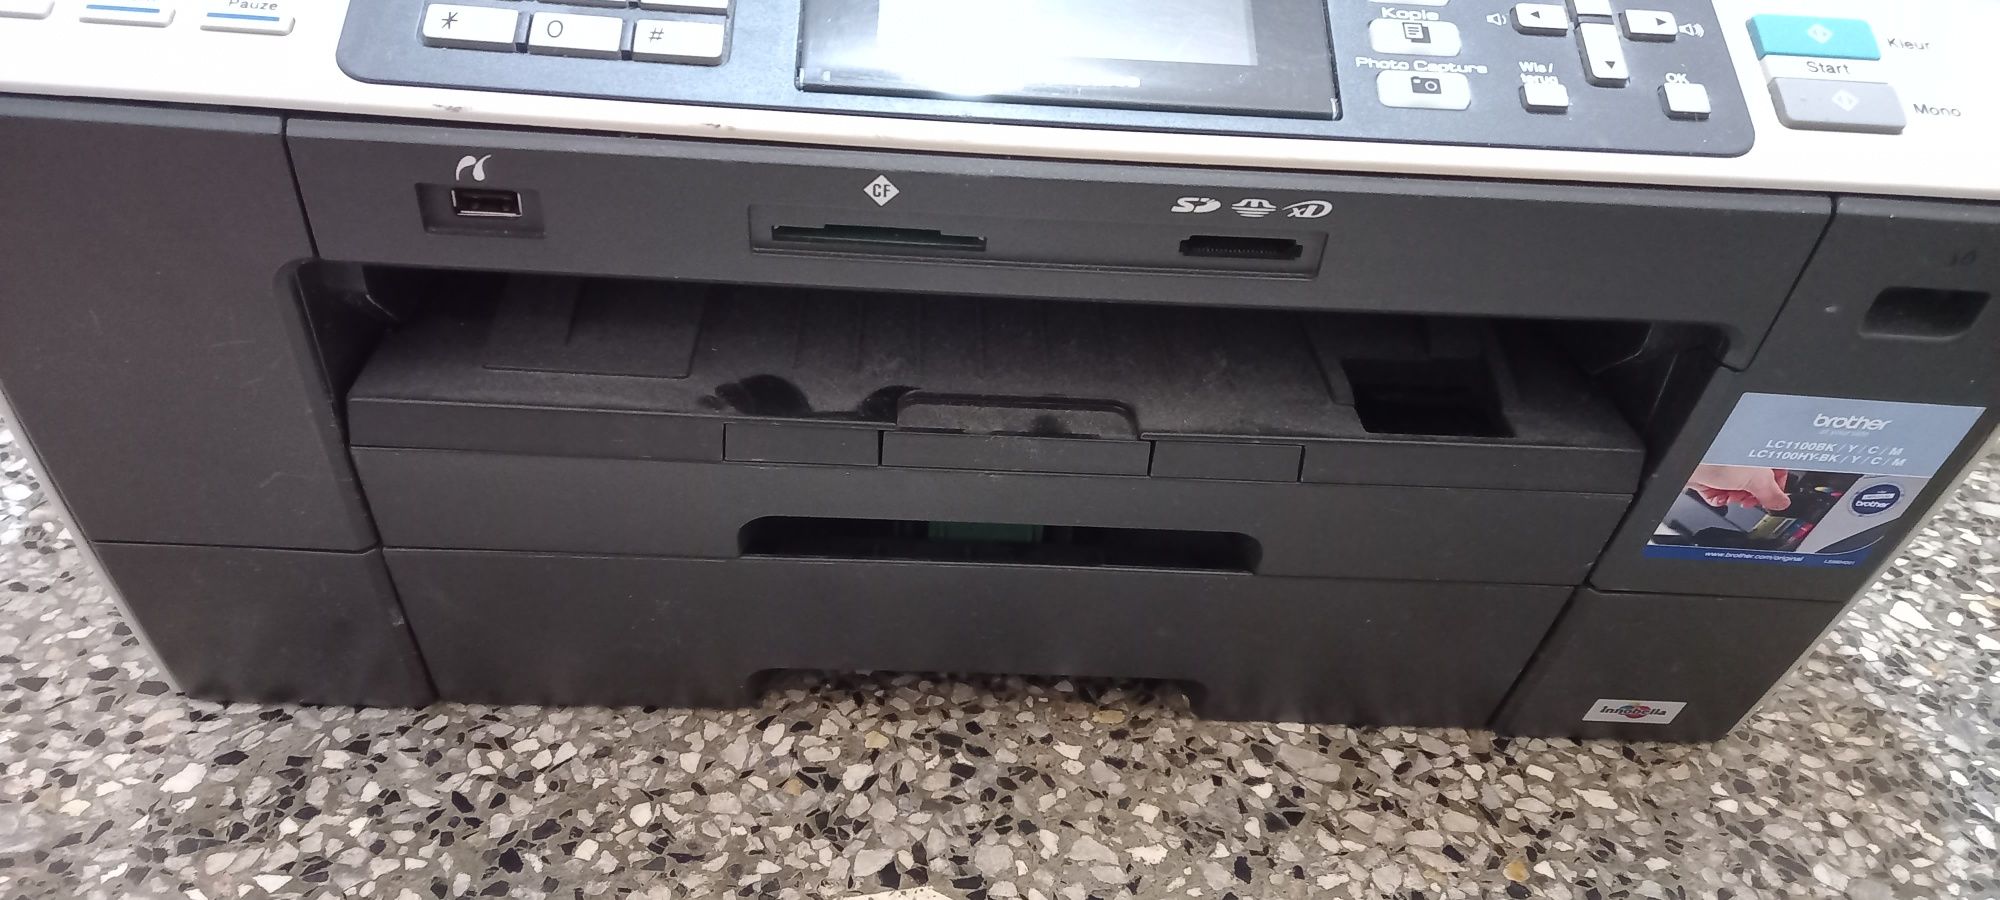 Комбиниран принтер скенер и копир  устройство